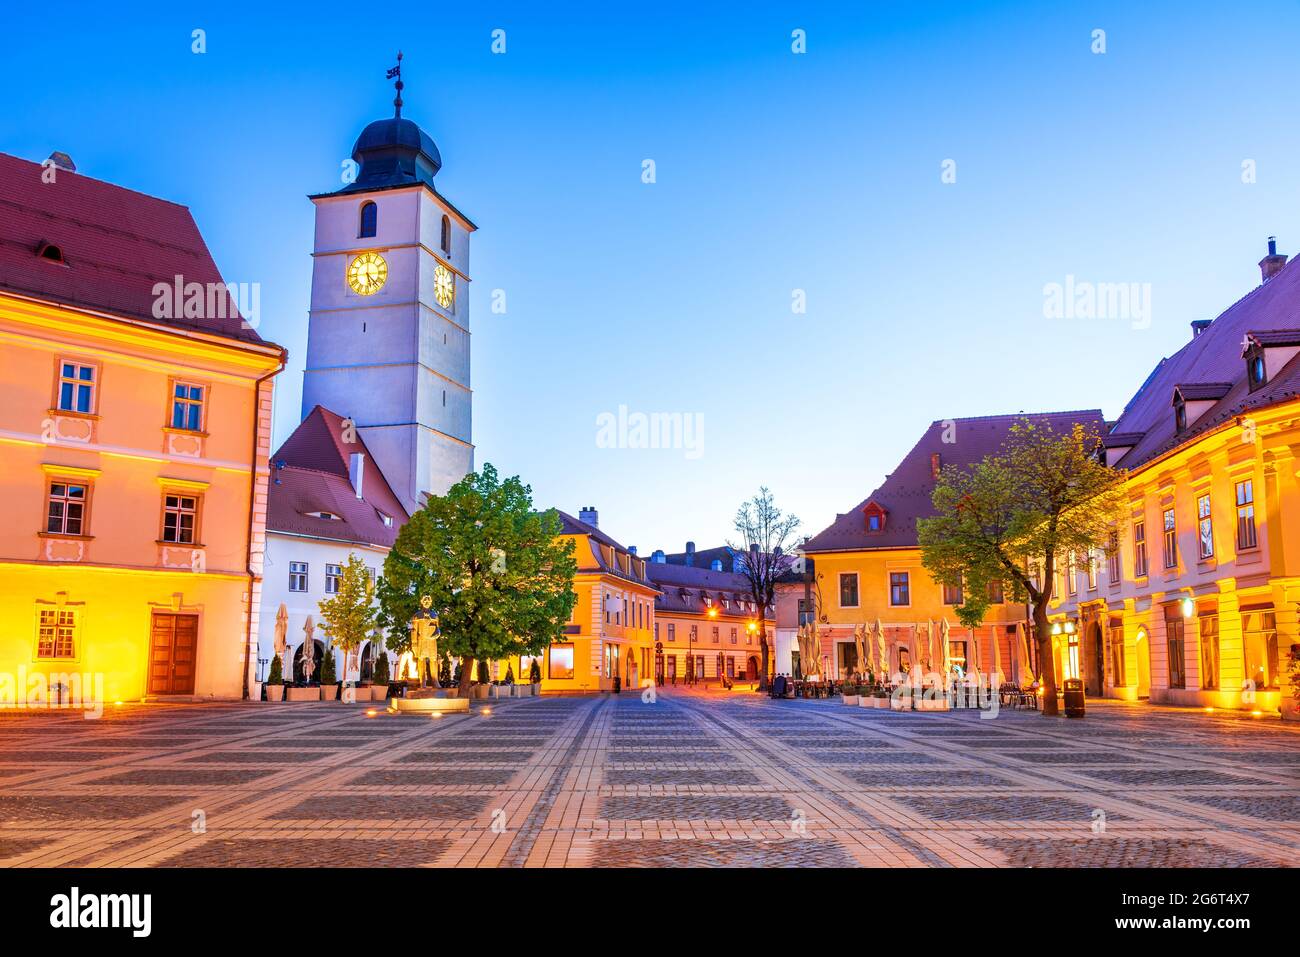 Sibiu, Rumania. Pintoresco centro medieval, lugar de viaje escénico en Transilvania. Foto de stock